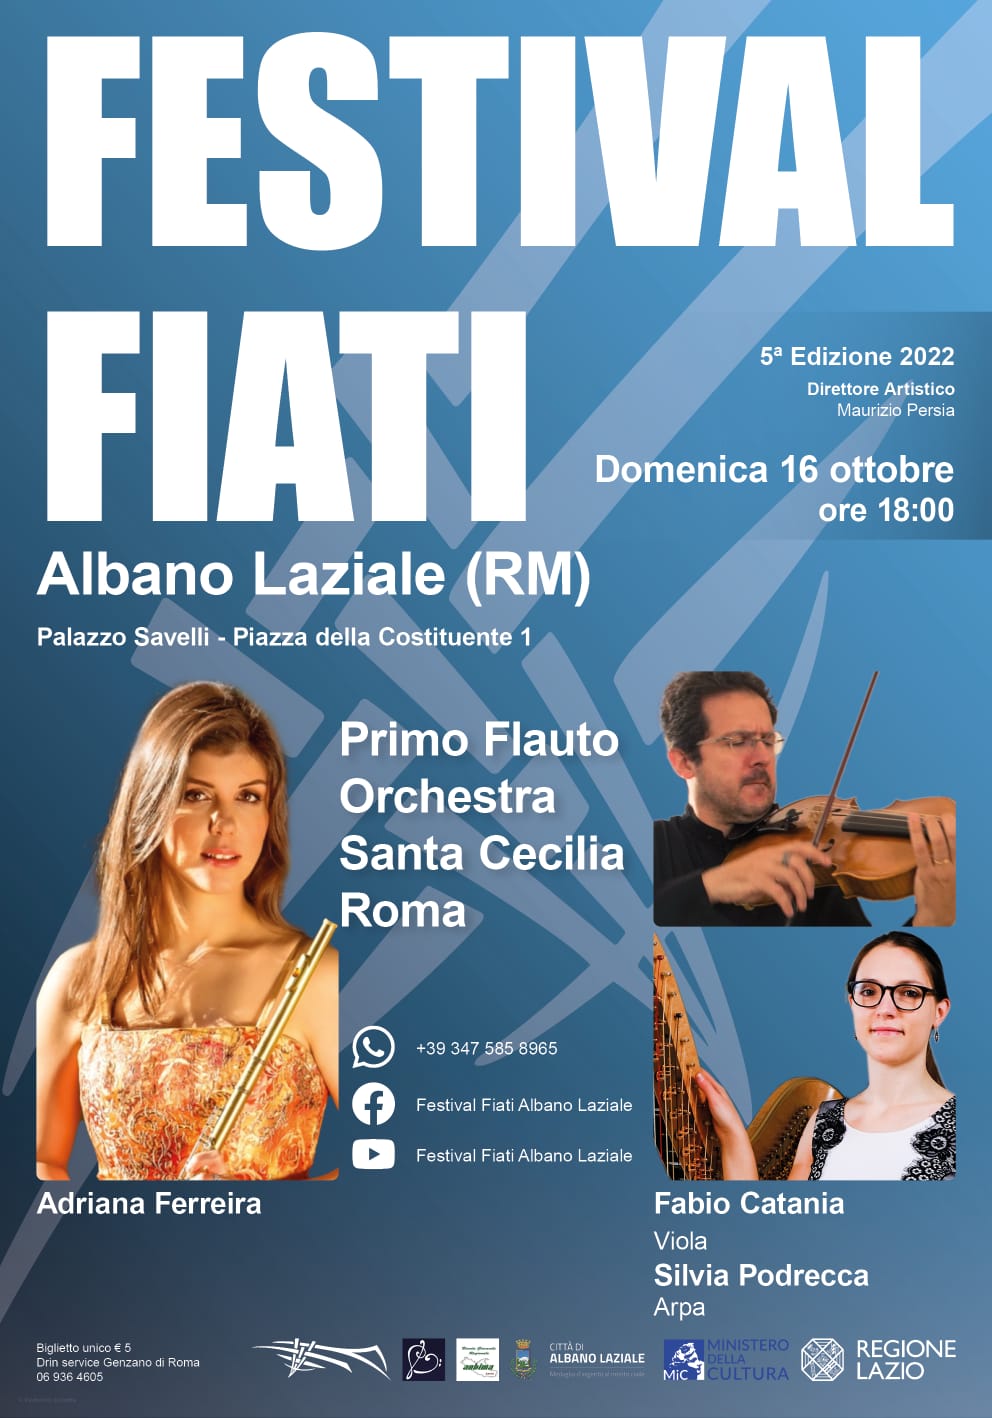 Festival Fiati Albano Laziale sempre più internazionale: concerto di Adriana Ferreira a Palazzo Savelli